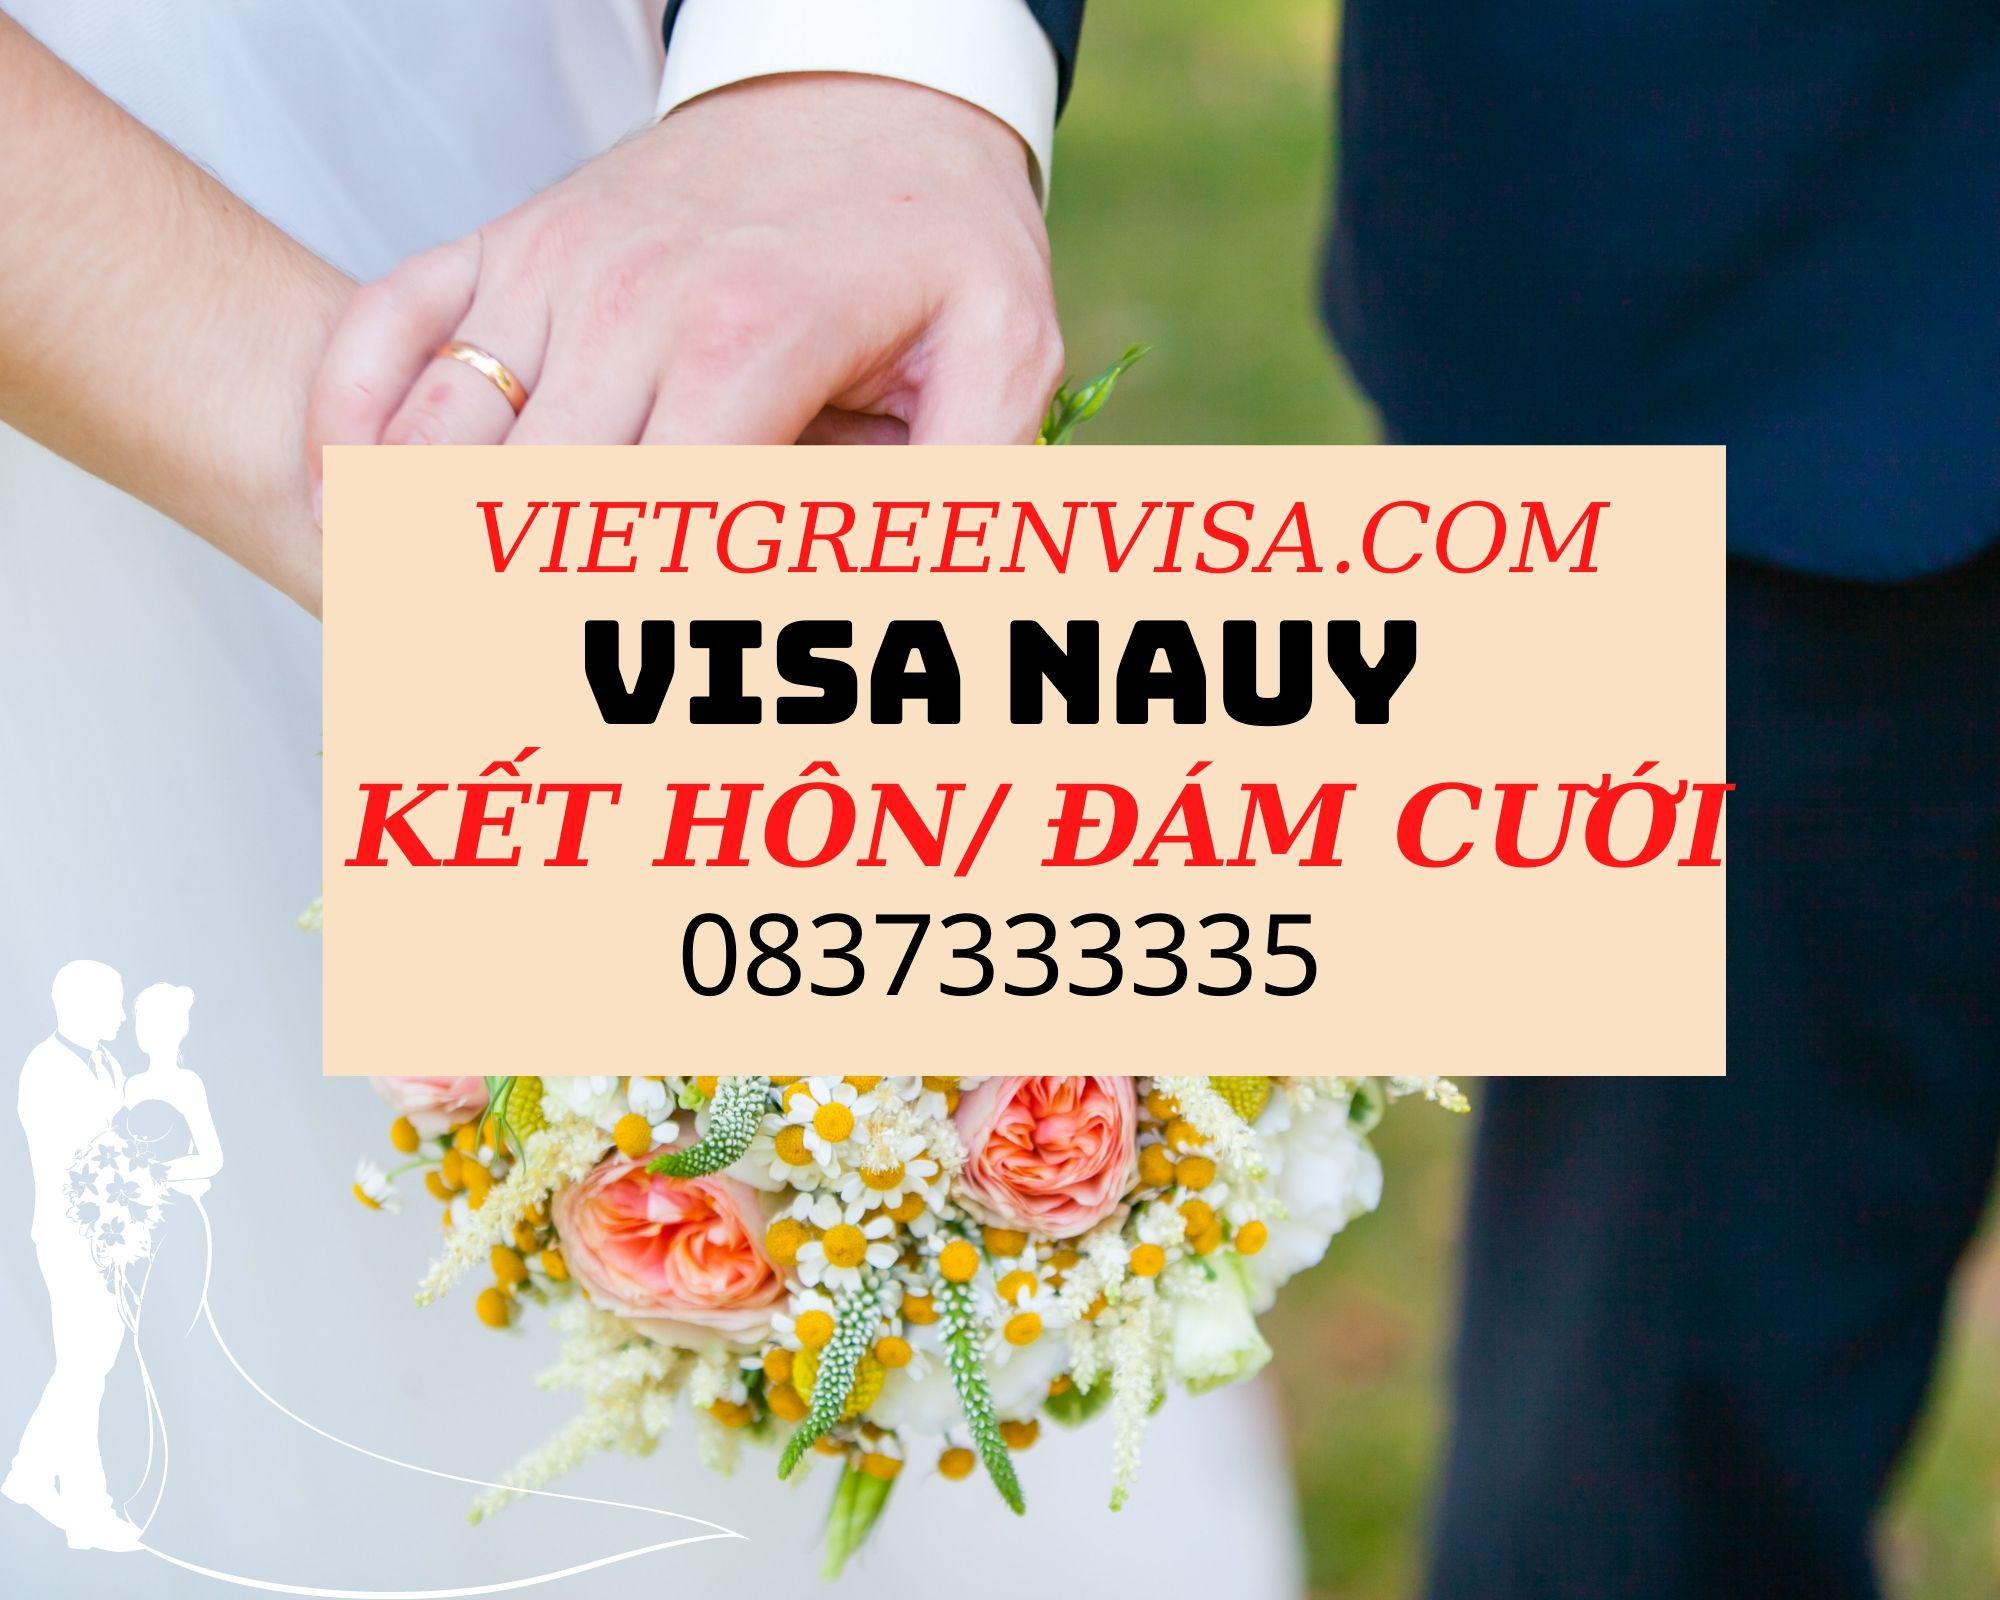 Dịch vụ xin visa đi Nauy kết hôn uy tín tại Viet Green Visa